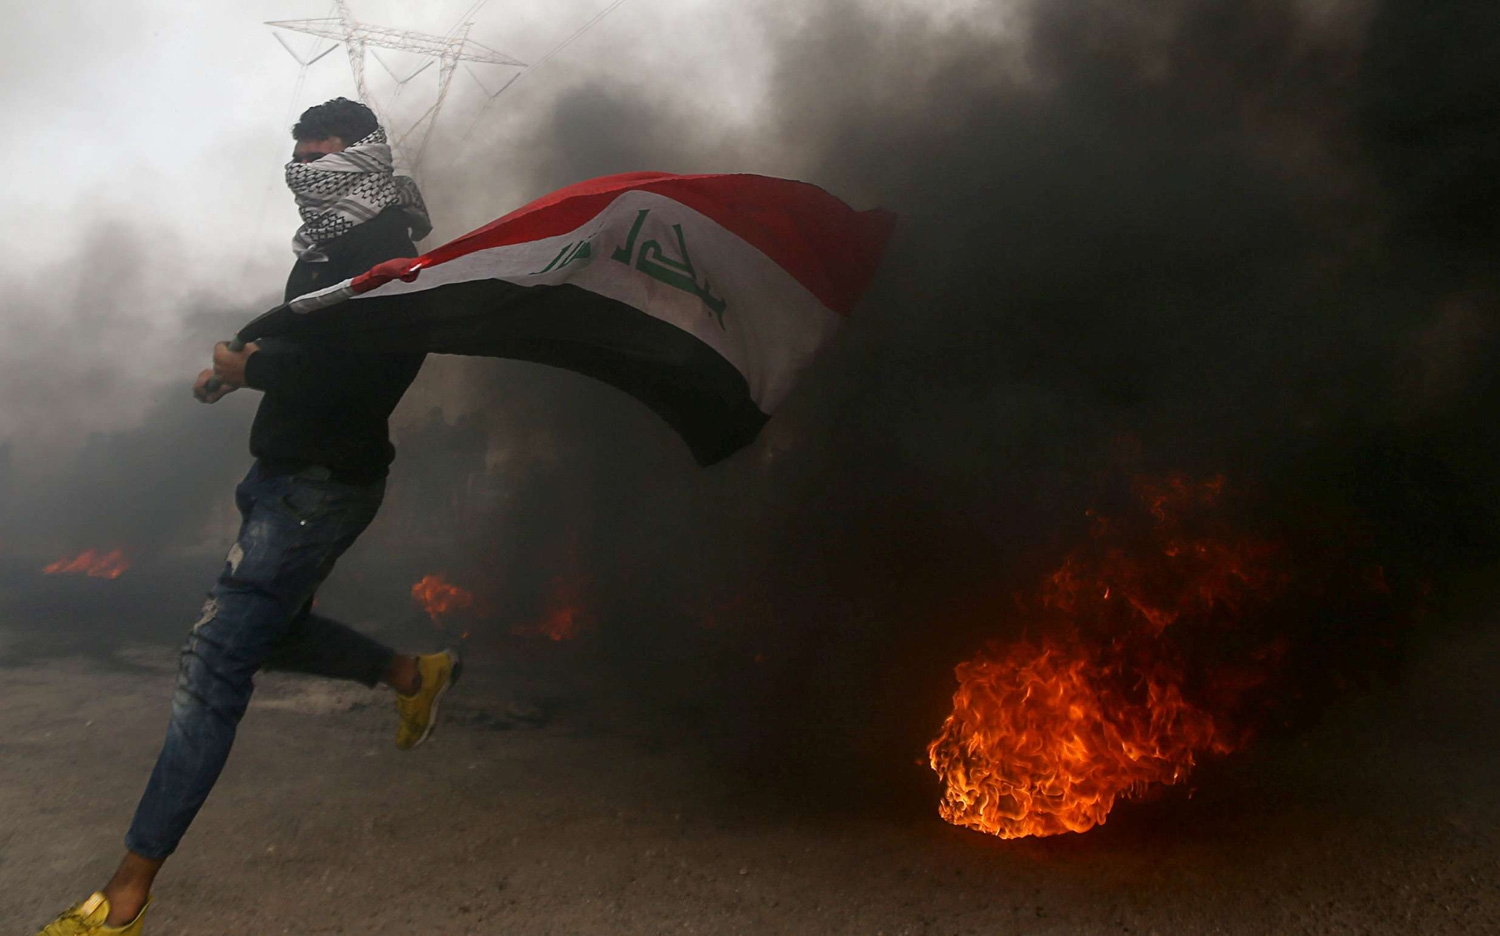 مع ارتفاع الحرارة وانقطاع الكهرباء.. ما احتمالية ان تشهد بغداد تظاهرات عارمة؟